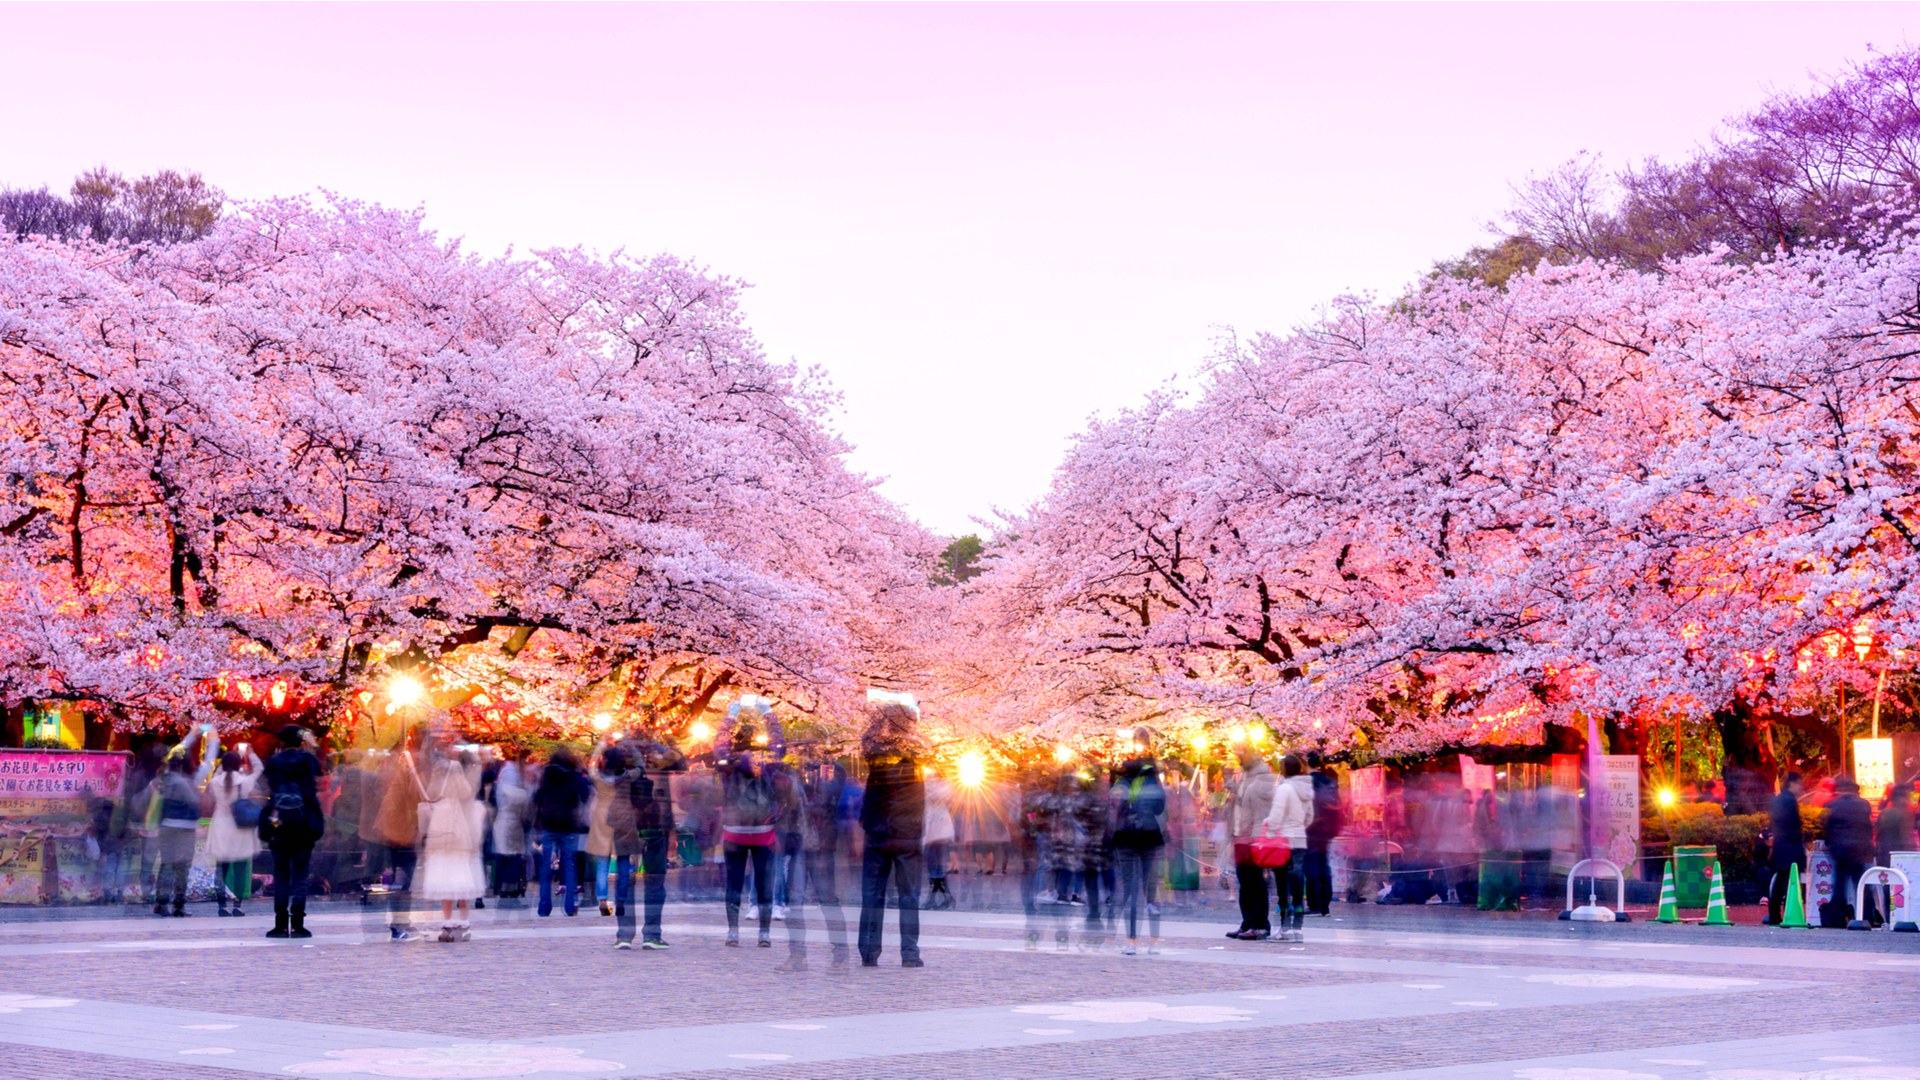 文化の街を彩る桜 美しき写真でめぐる 東京都 上野恩賜公園 ページ 2 2 Trip Editor